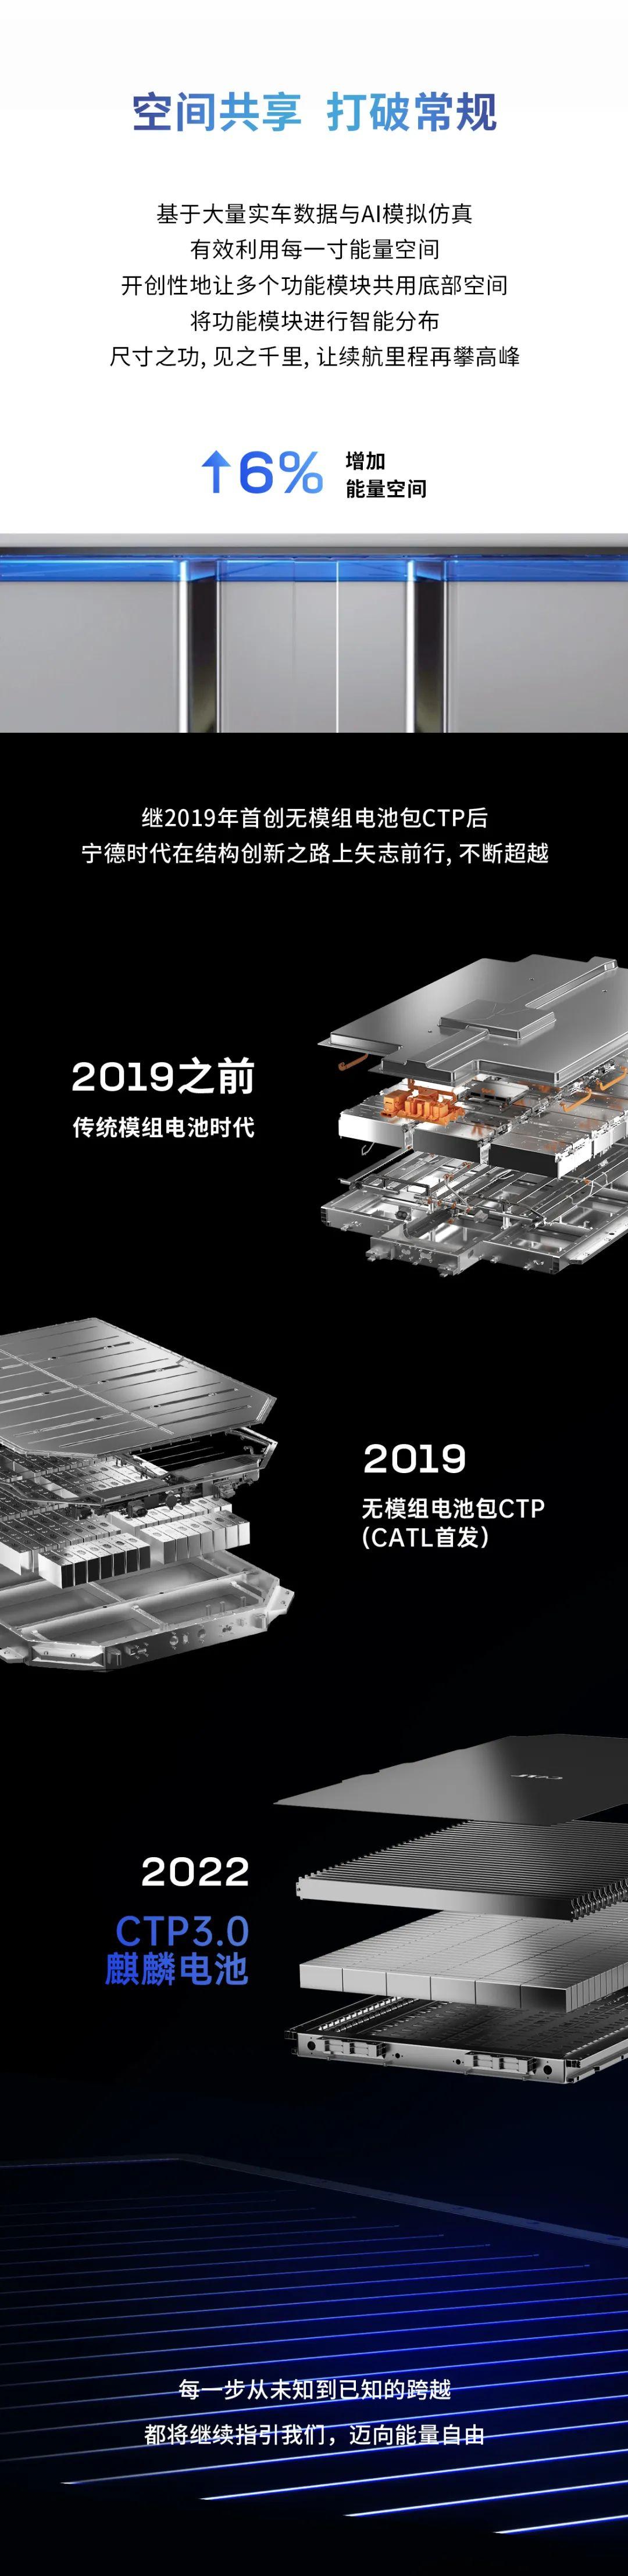 宁德时代发布CTP3.0麒麟电池 将于2023年量产上市